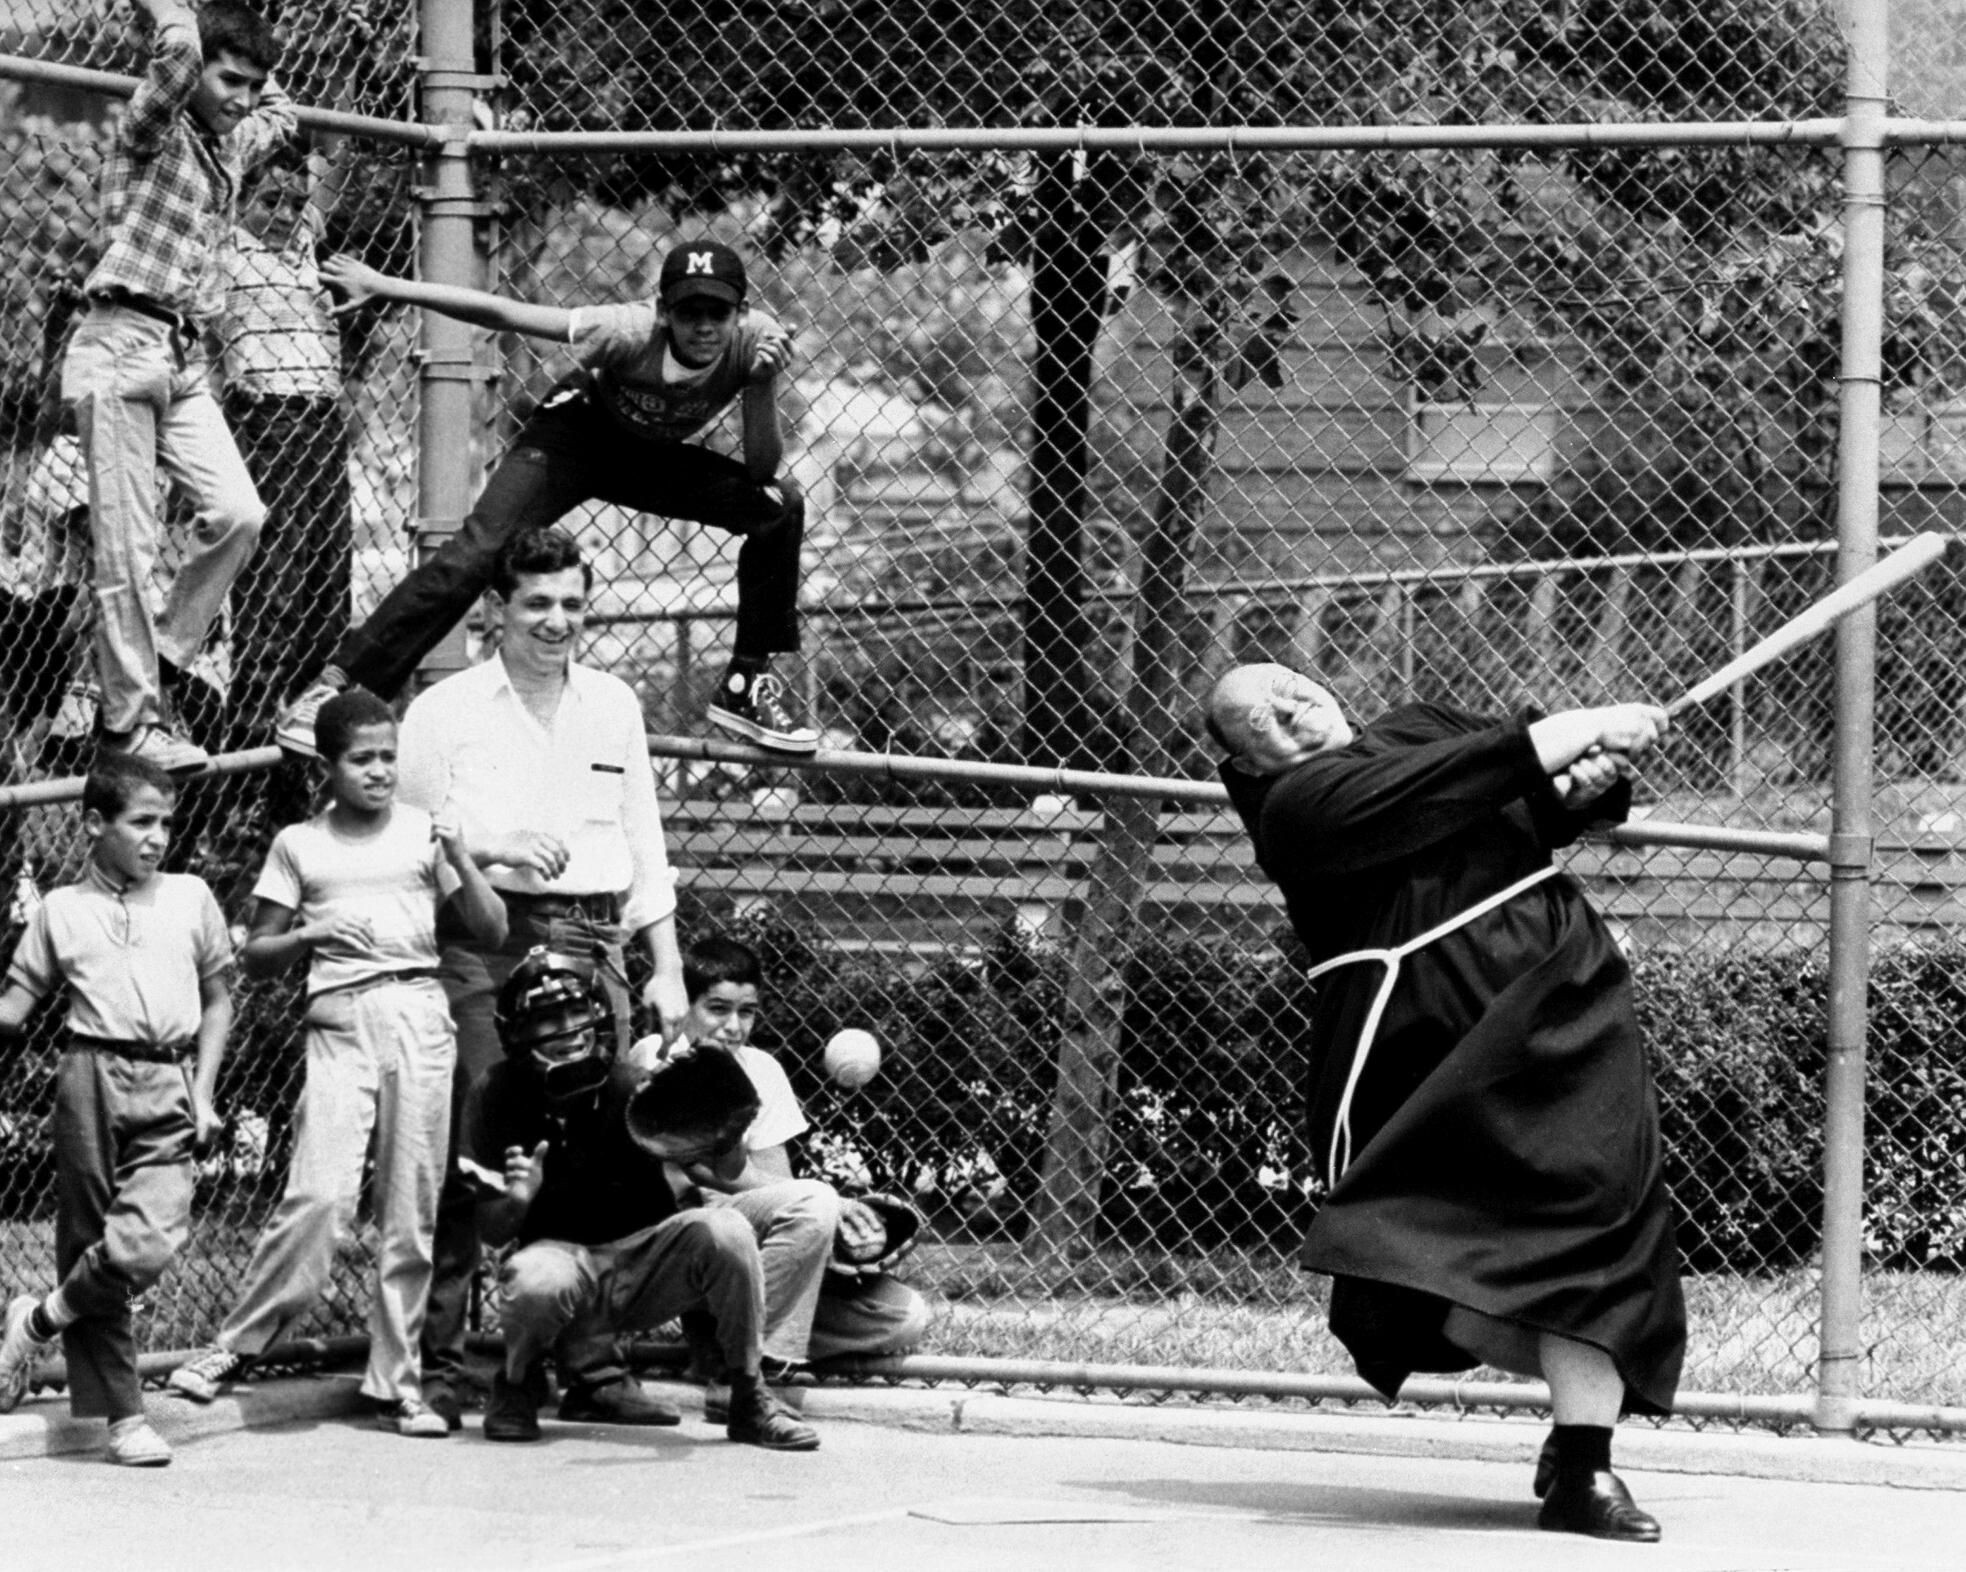 Преподобный Капистран Феррито играет в бейсбол на детской площадке в Нью-Йорке, 1960-е. Фотограф Джон Дюпри